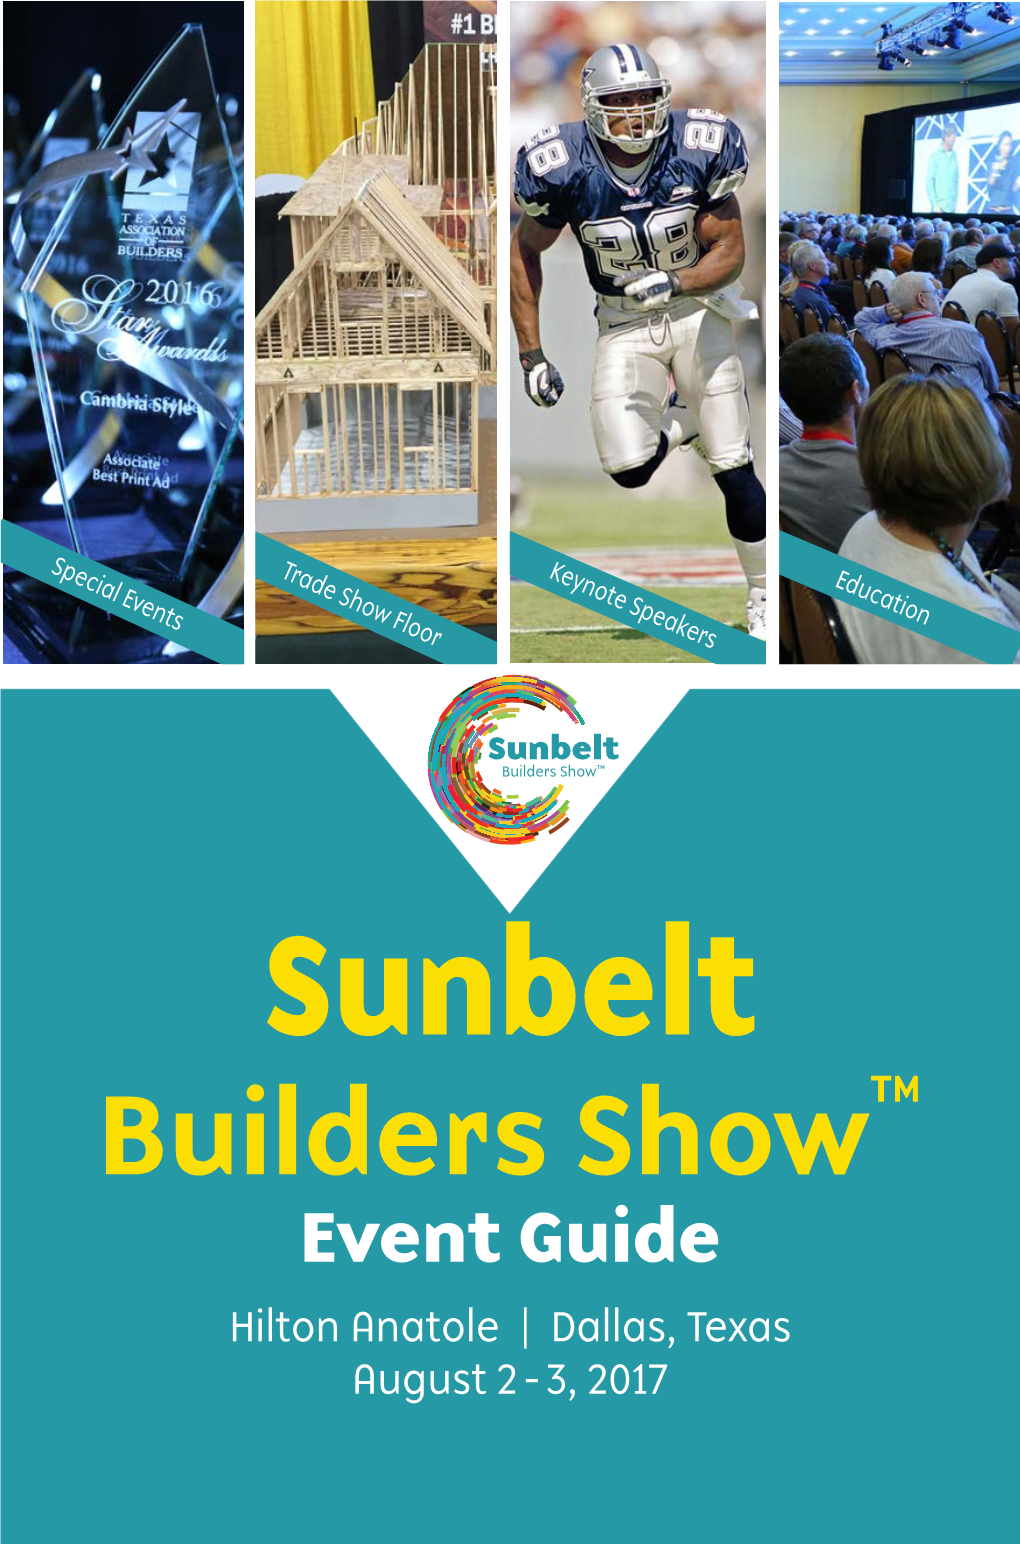 Sunbelt Builders Show™